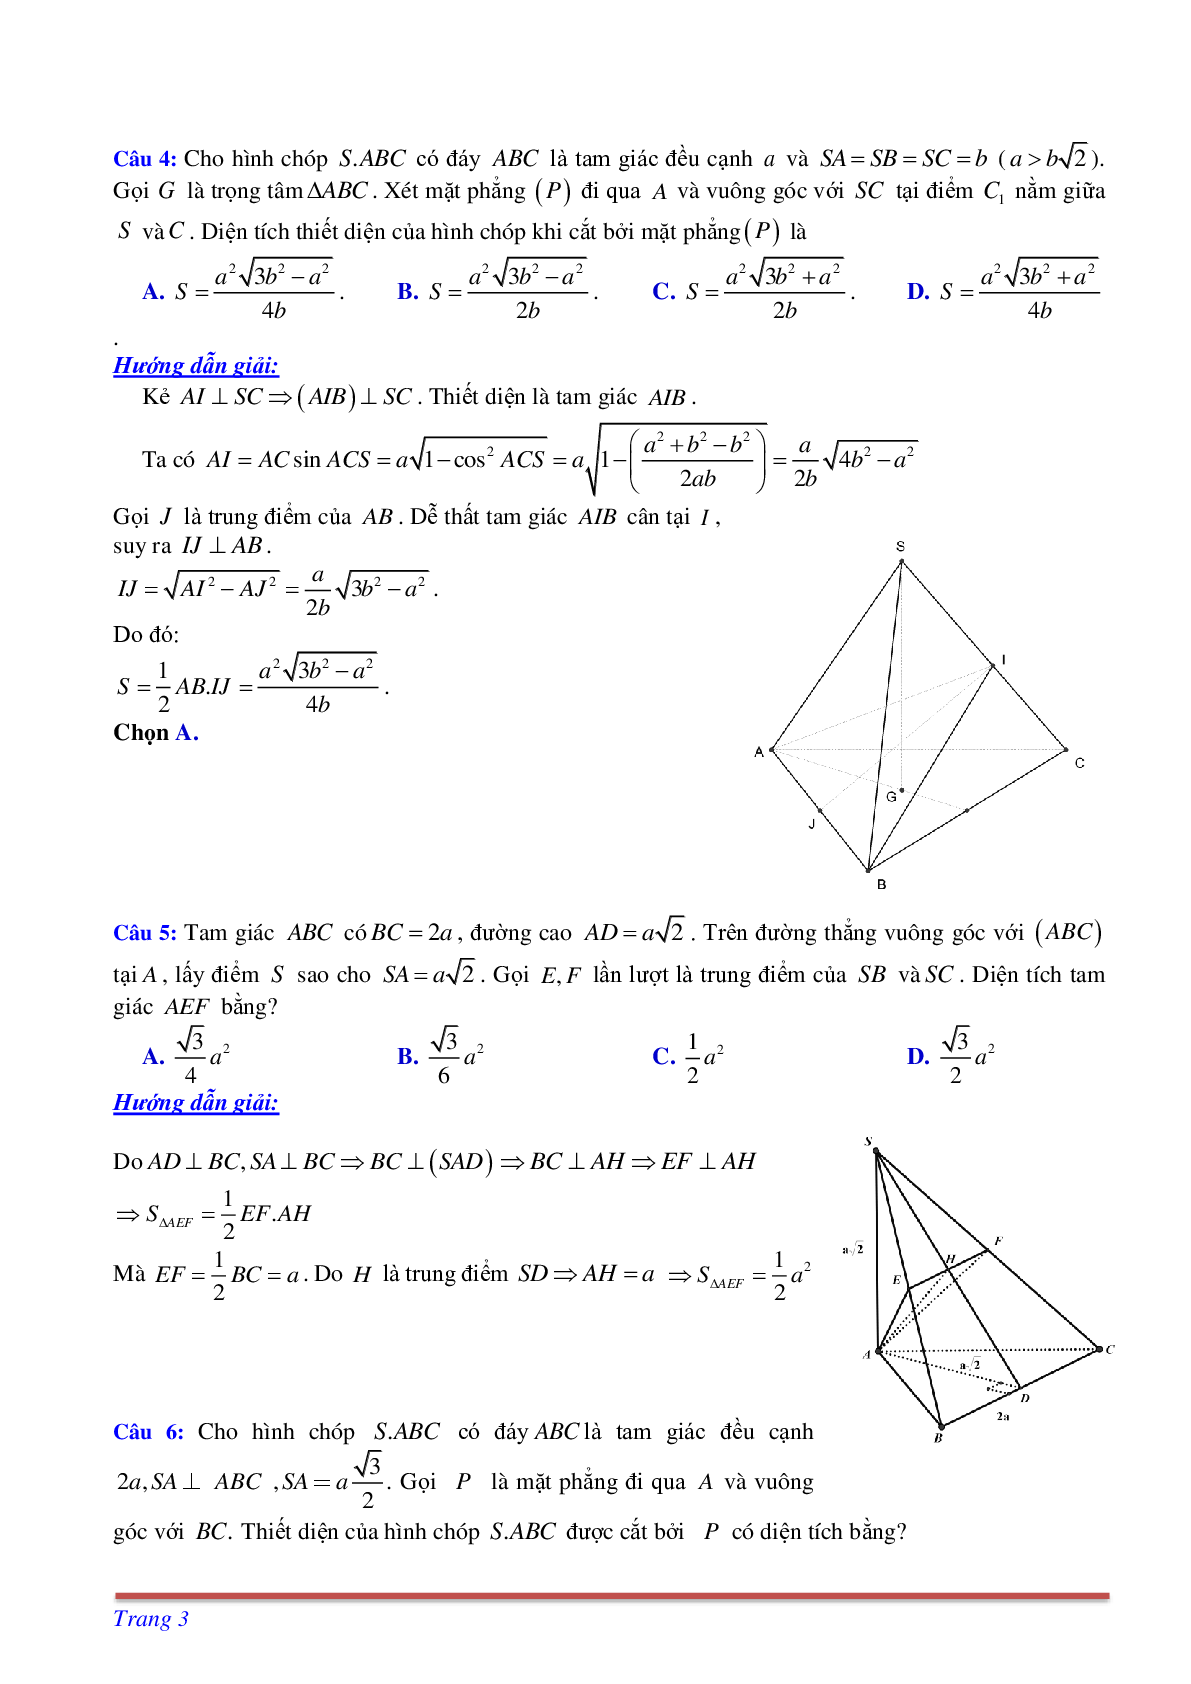 Phương pháp giải và bài tập về Cách tìm thiết diện liên quan đến vuông góc có đáp án (trang 3)